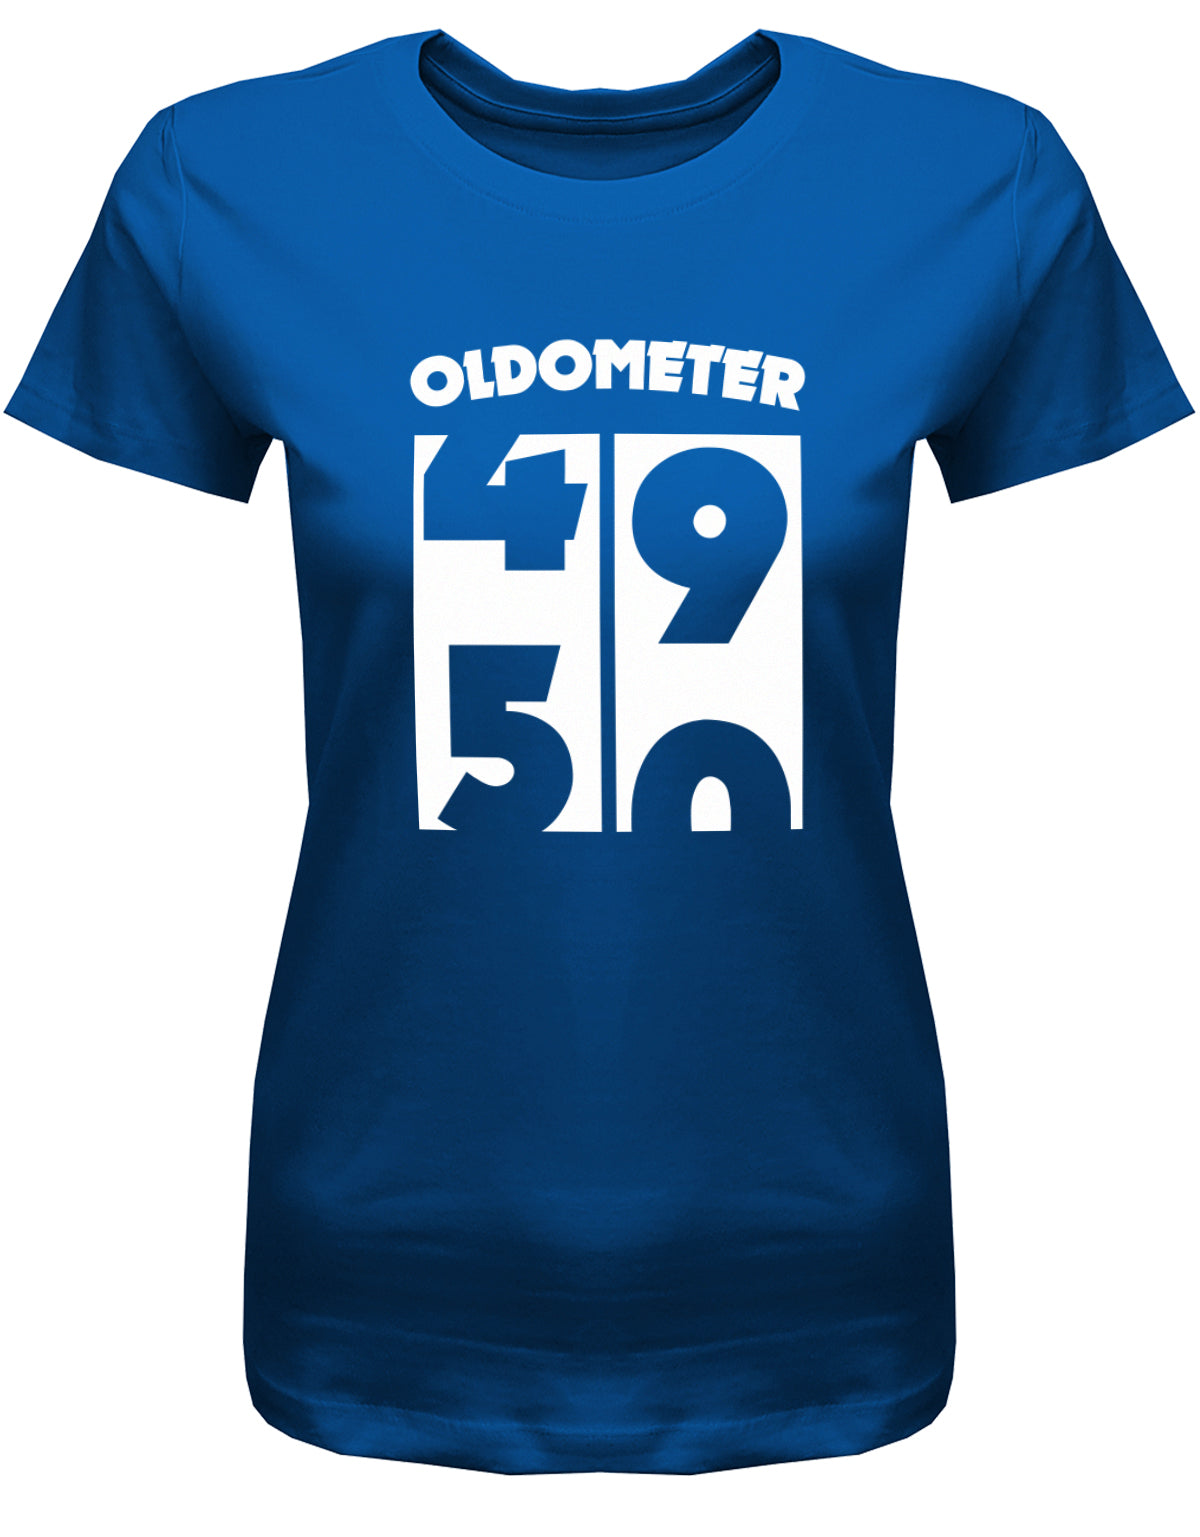 Lustiges T-Shirt zum 50. Geburtstag für die Frau Bedruckt mit Oldometer Wechsel von 49 auf 50 Jahre. Royalblau